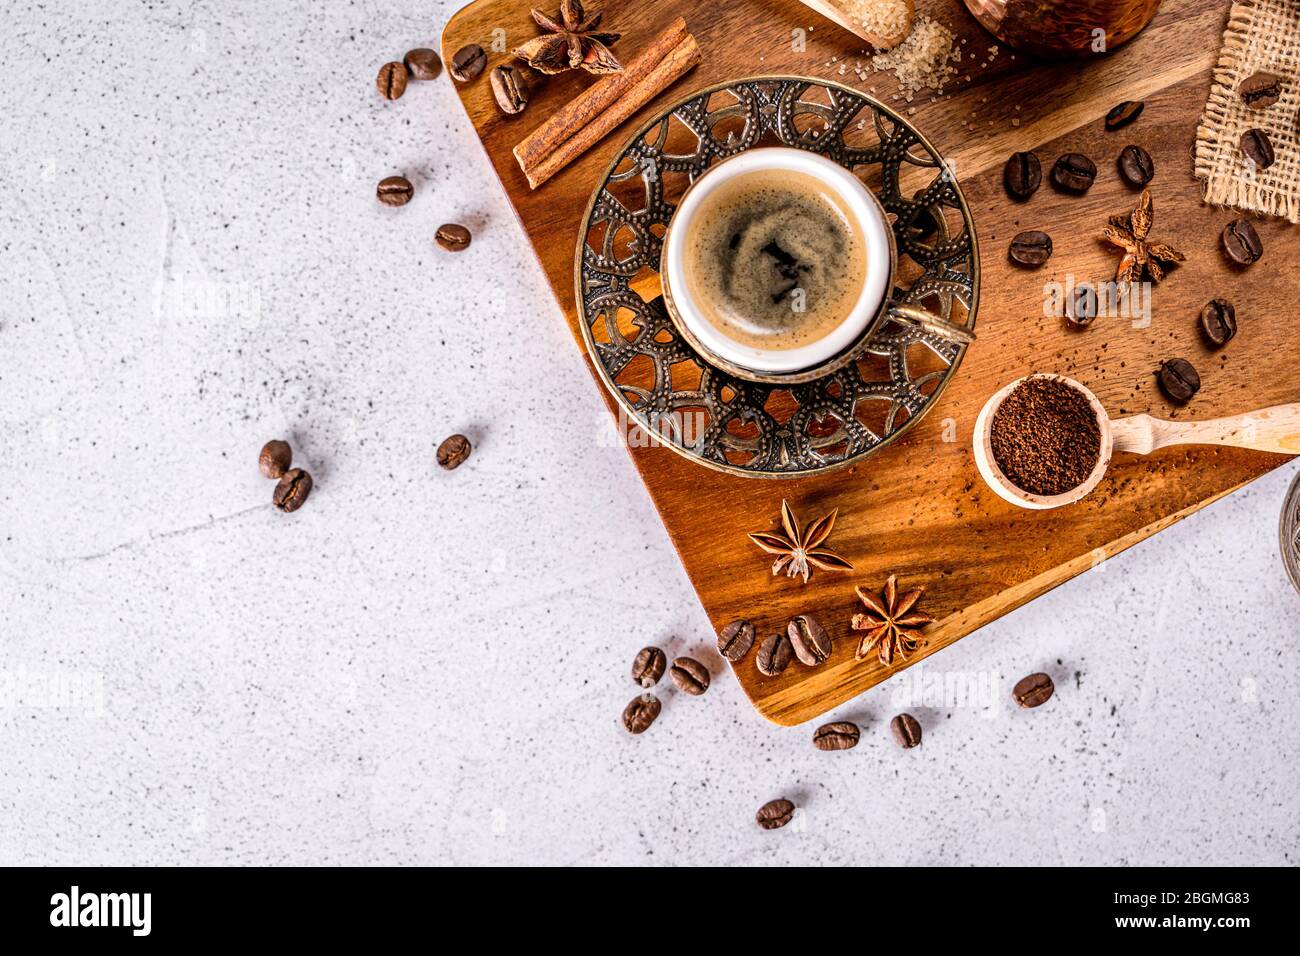 Vista superior de una taza de café turco vintage con especias, frijoles y café molido en polvo Foto de stock